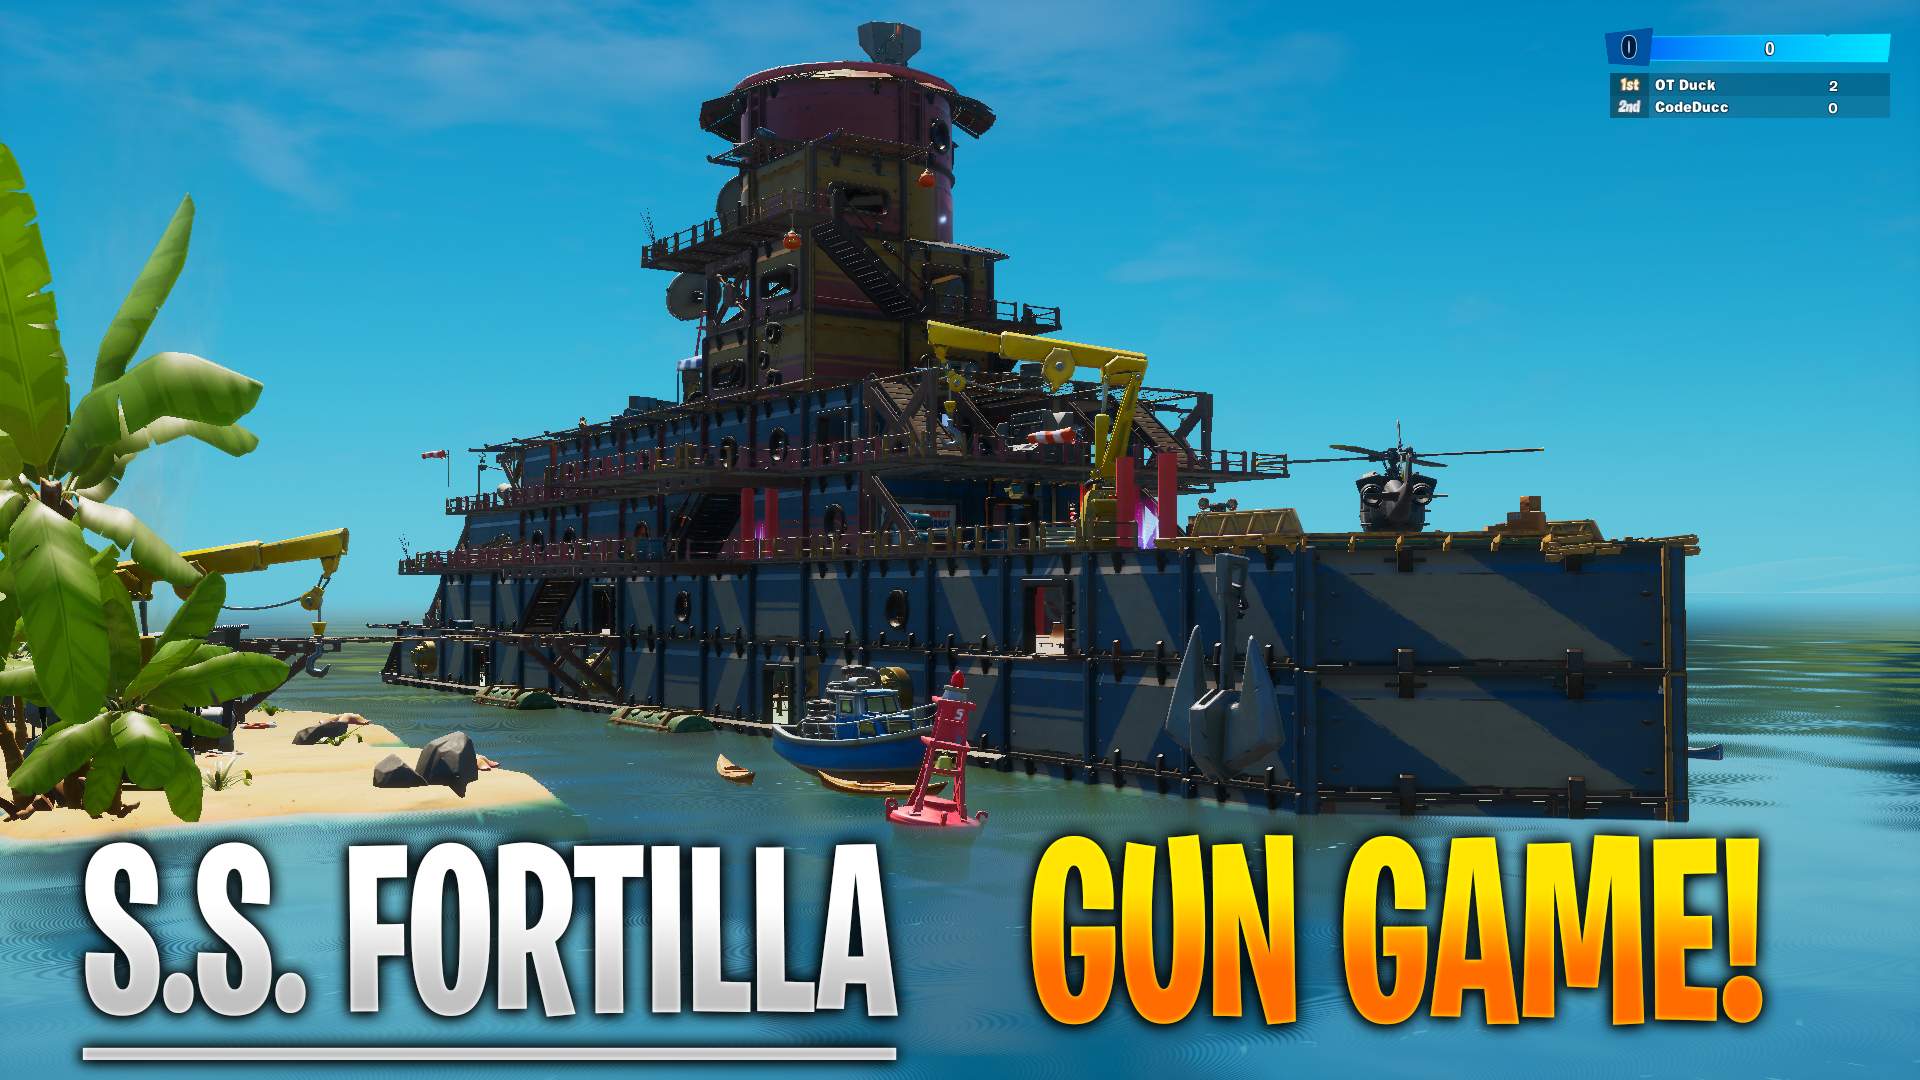 S.S. FORTILLA GUN GAME!